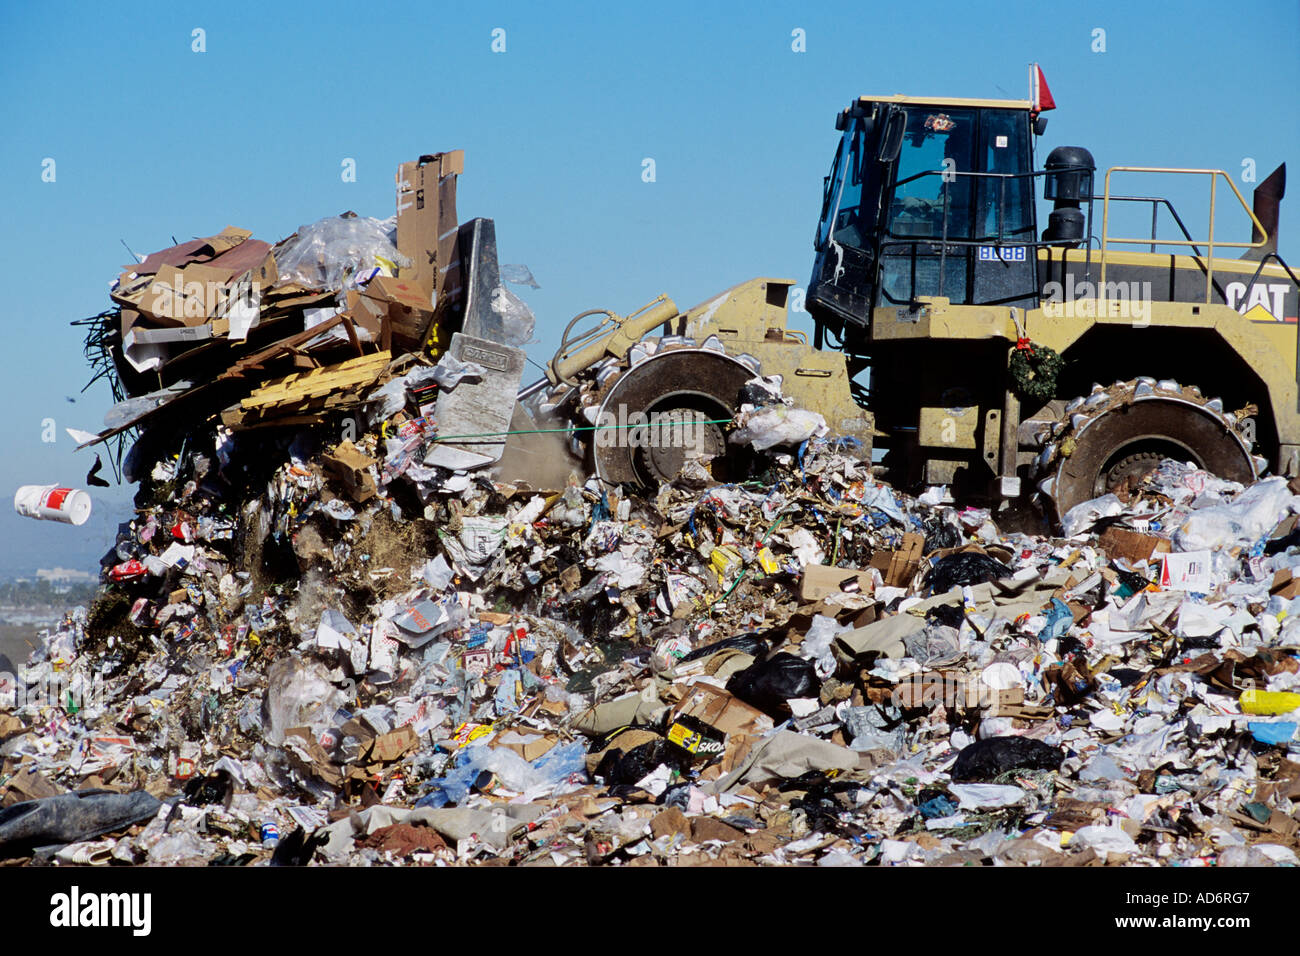 A large Cat  Bulldozer plows trash at a landfill. Stock Photo